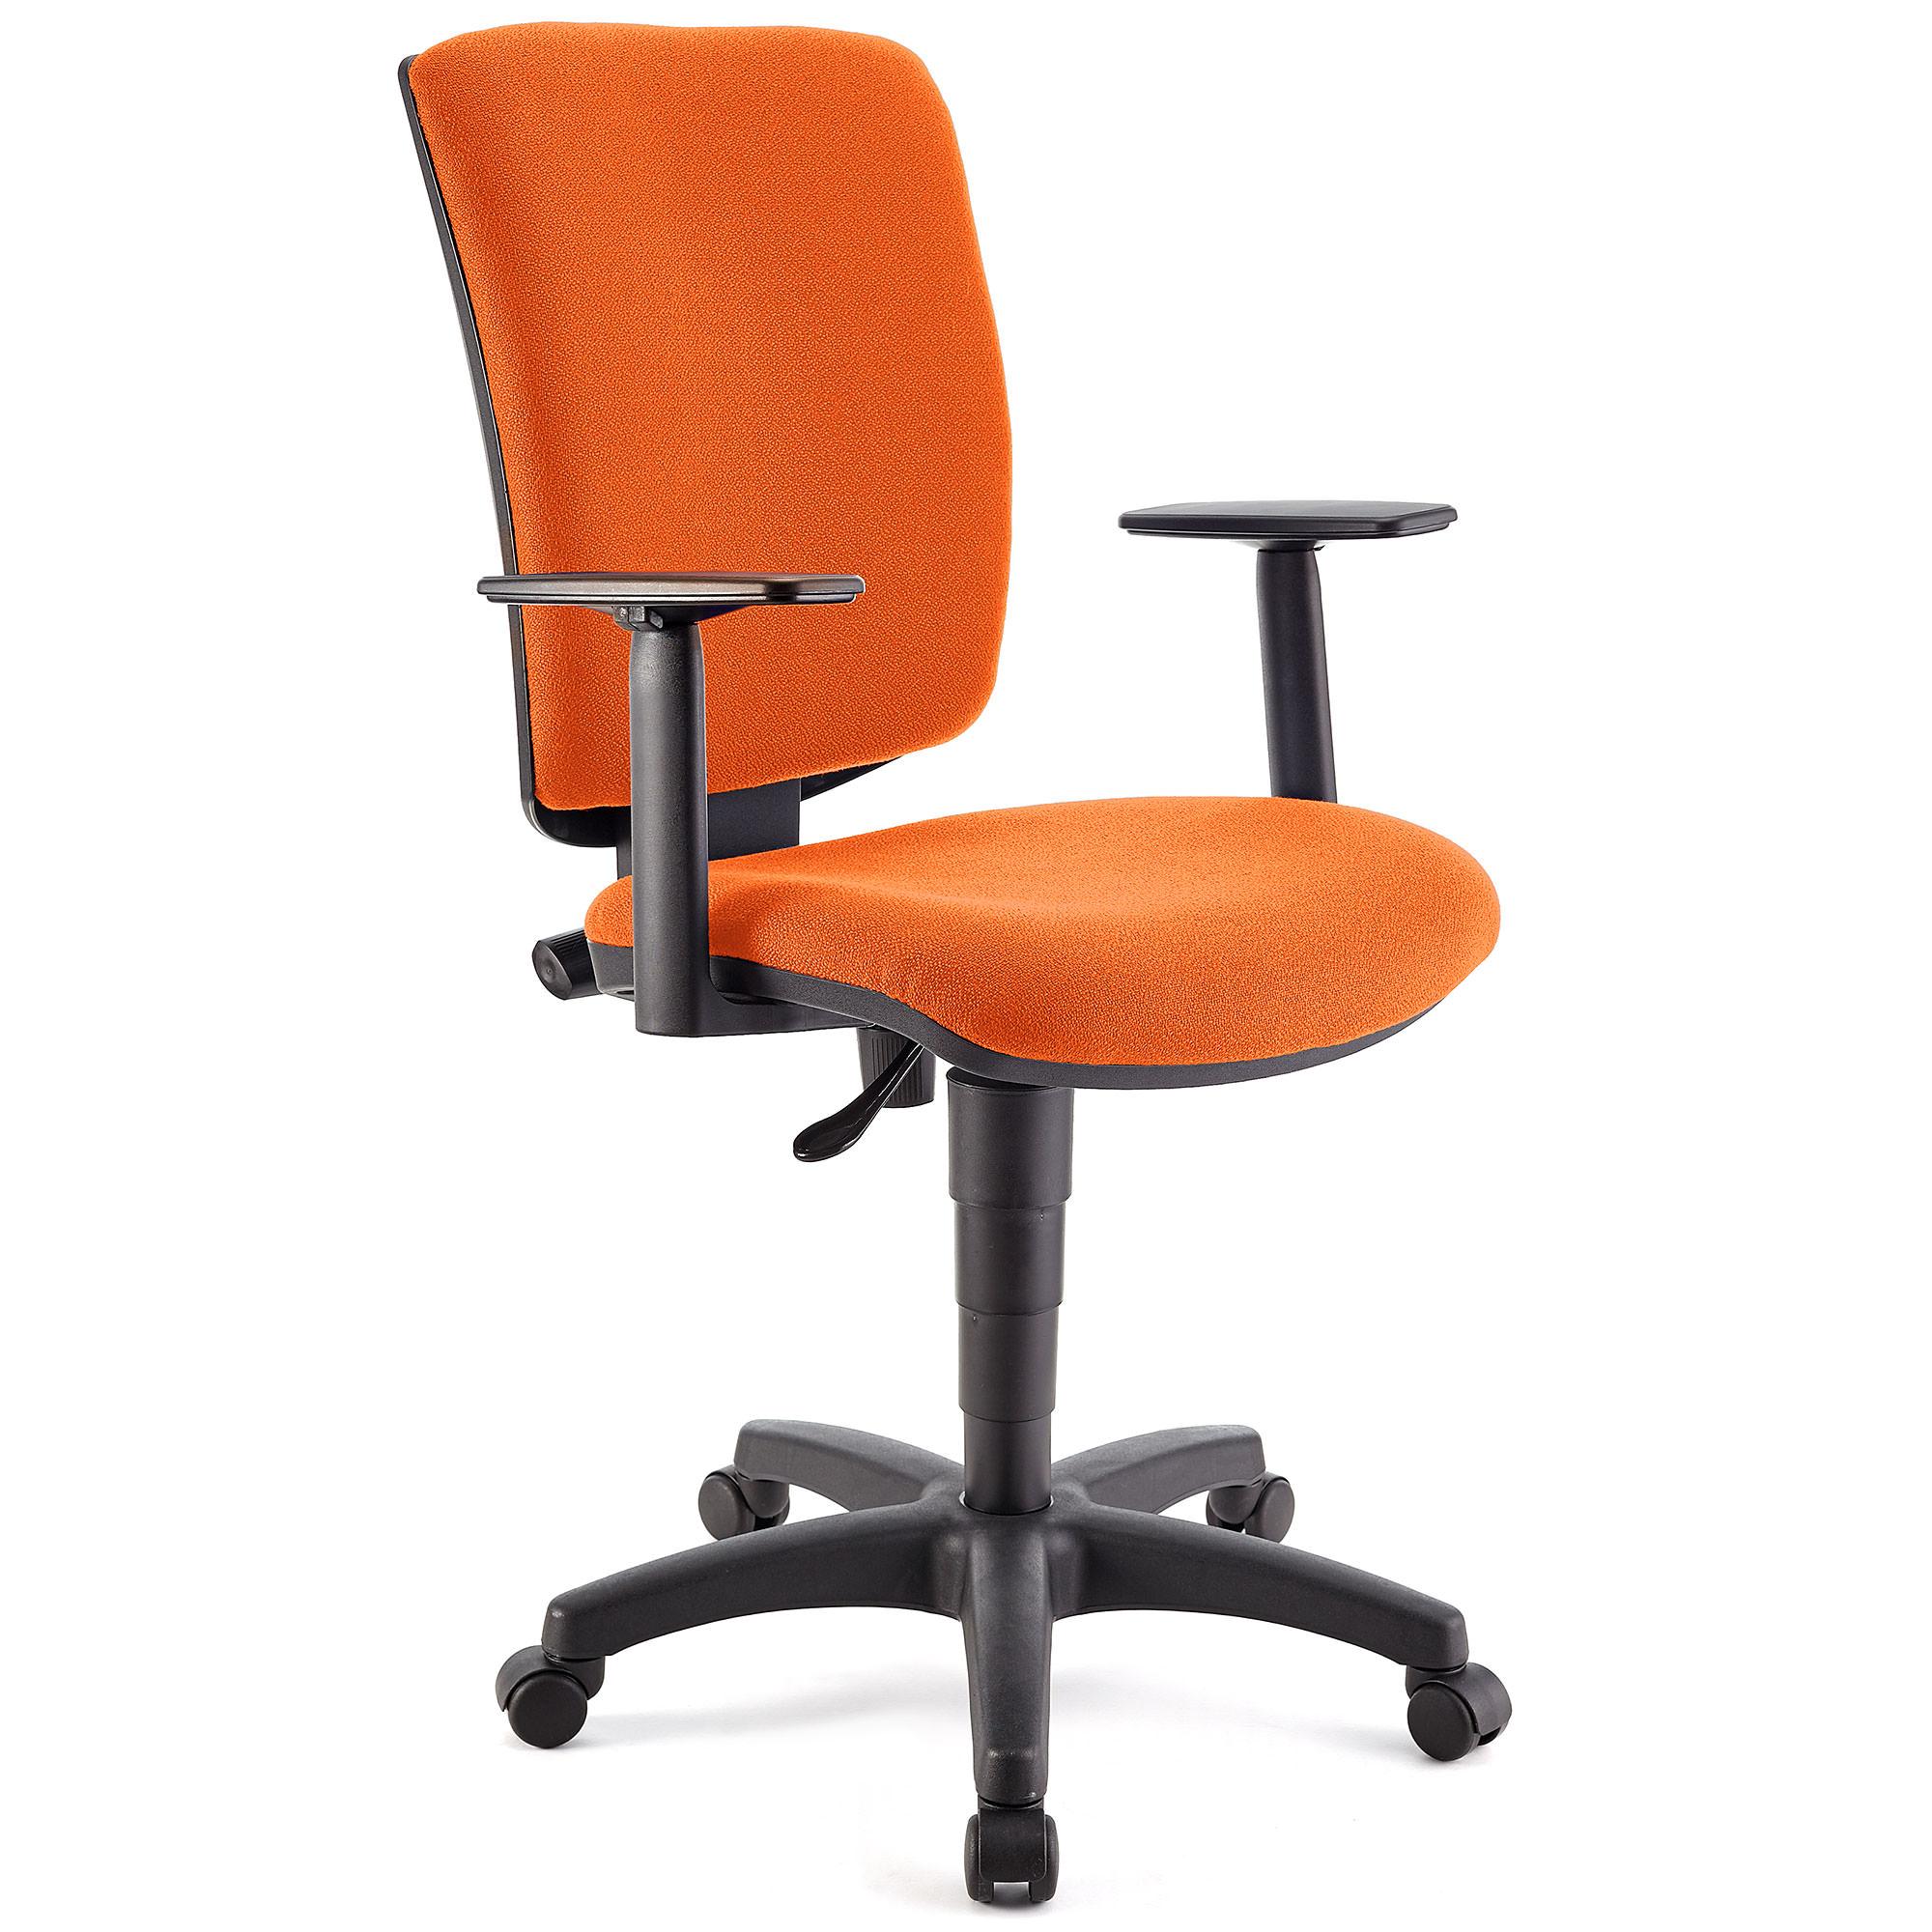 Bürostuhl ATLAS PLUS STOFF, verstellbare Rücken- und Armlehnen, dicke Polsterung, Farbe Orange